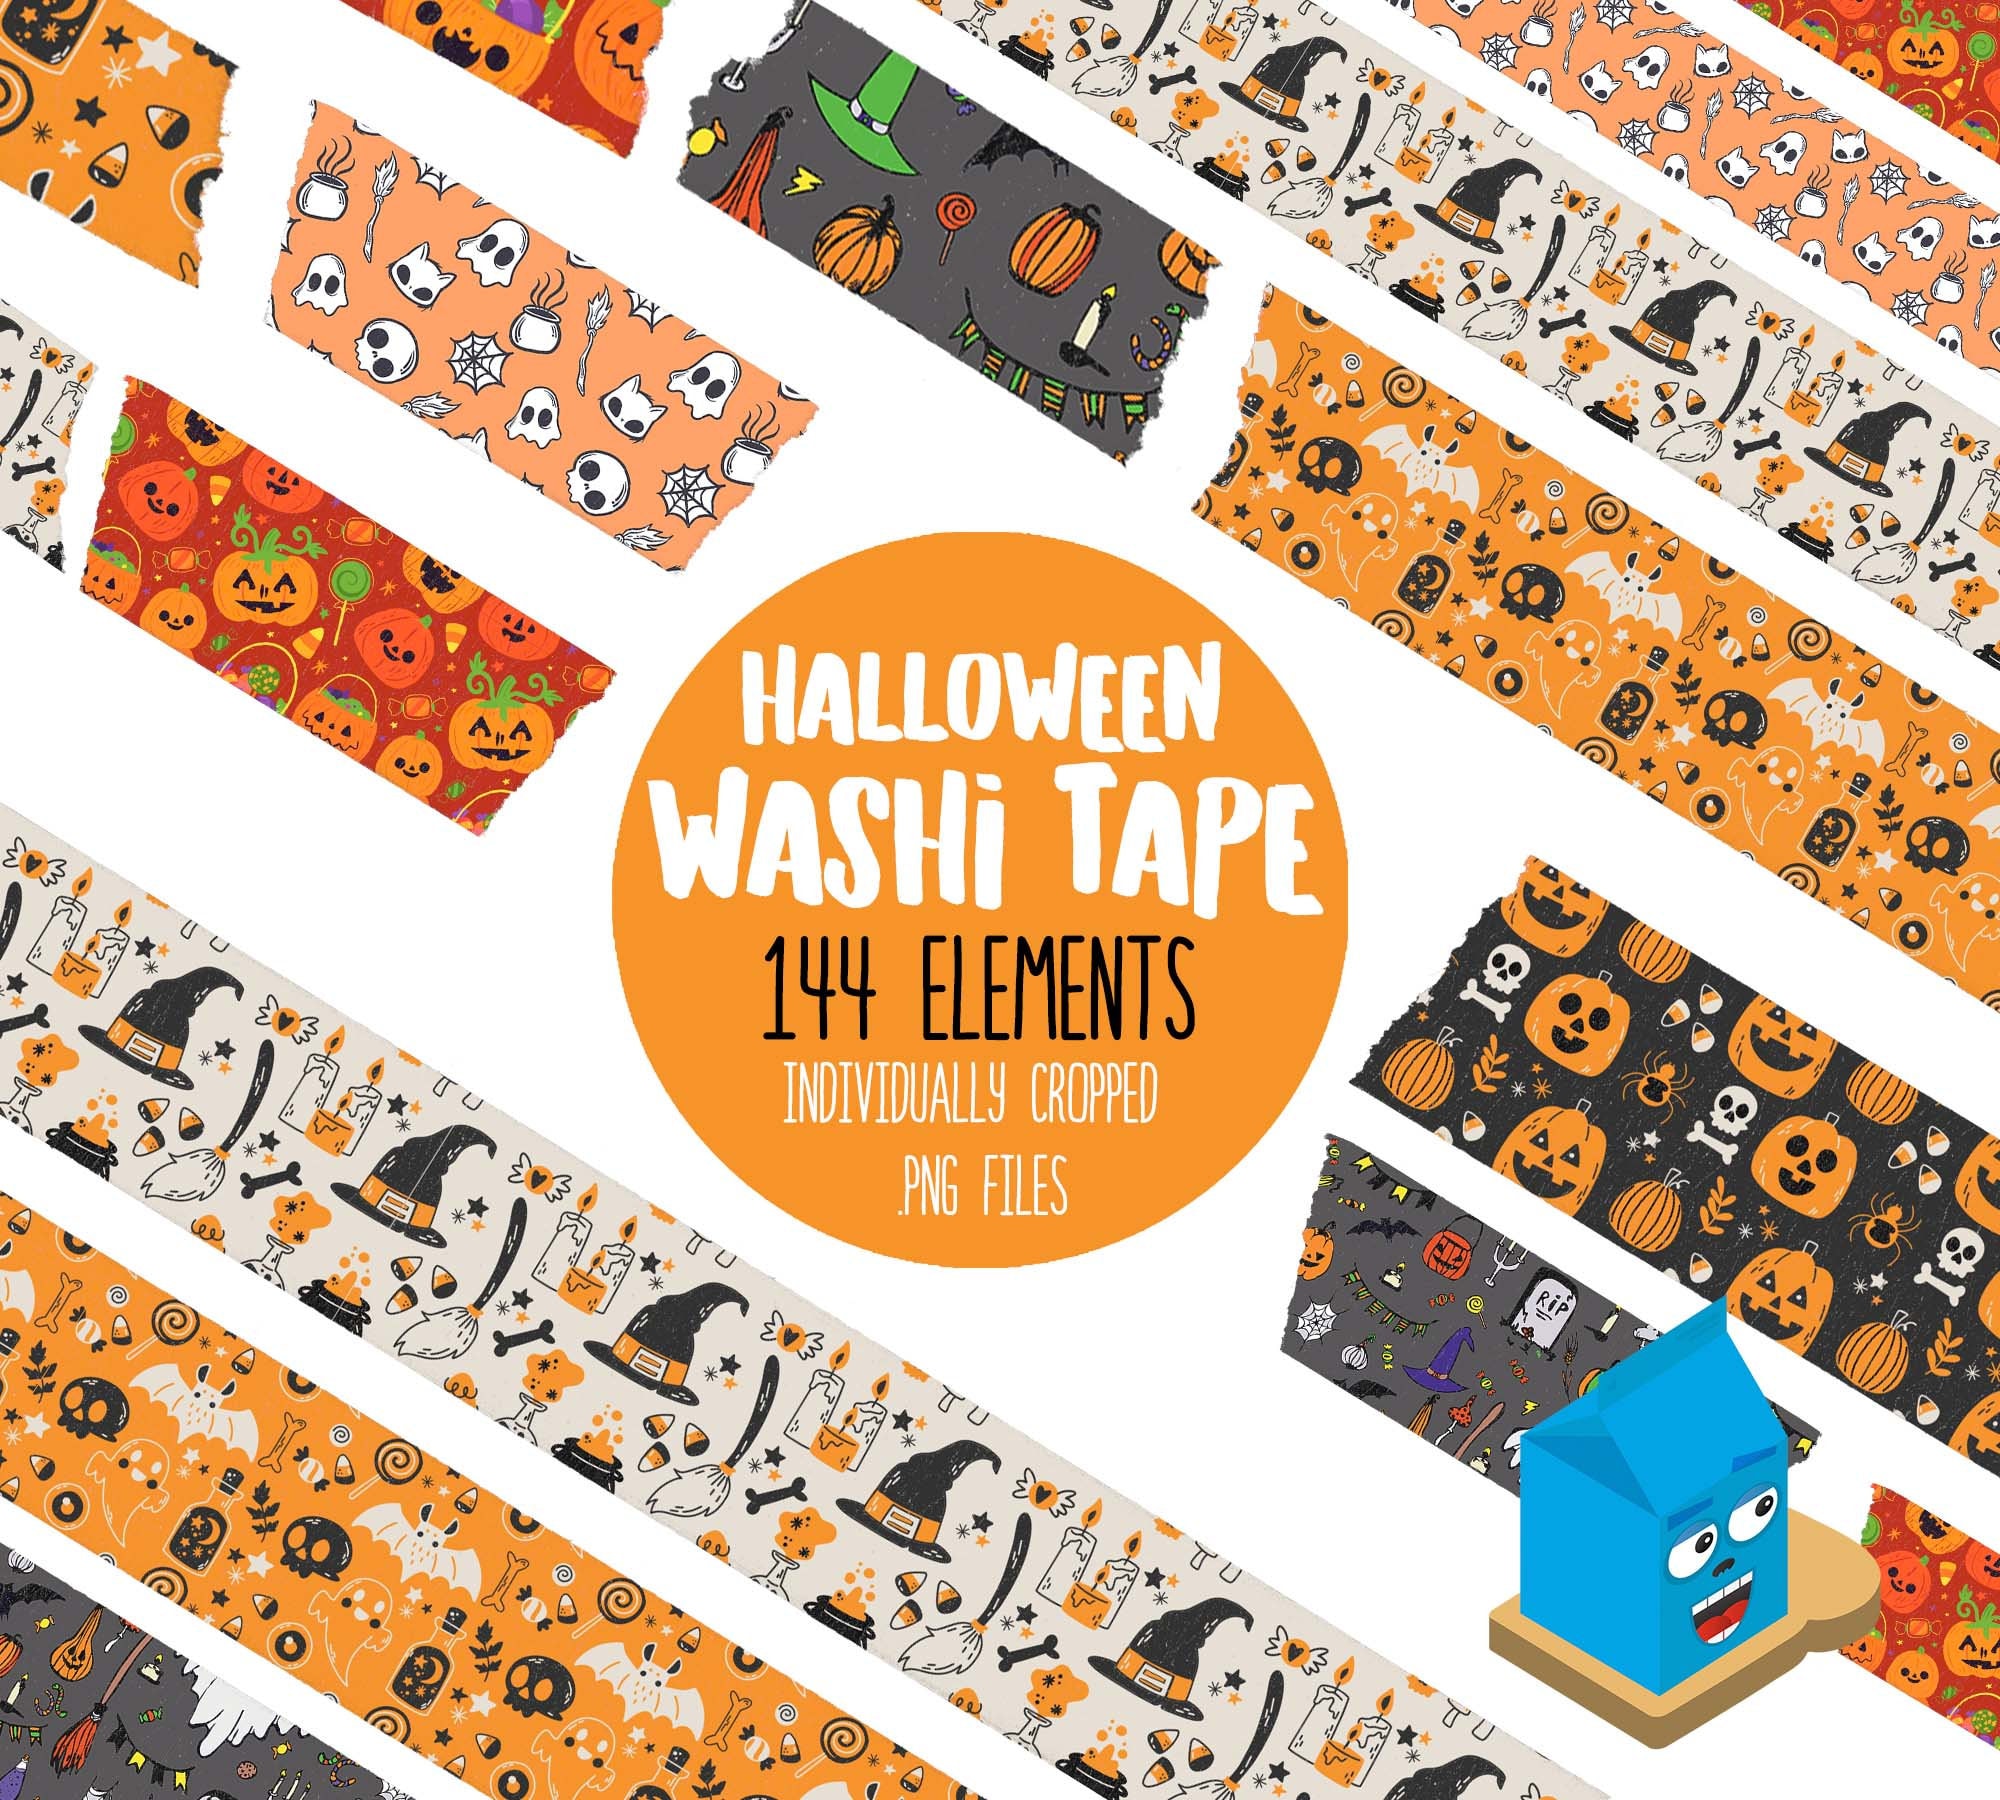 Sanderson Washi Tape, Halloween Washi Tape – A Black Star